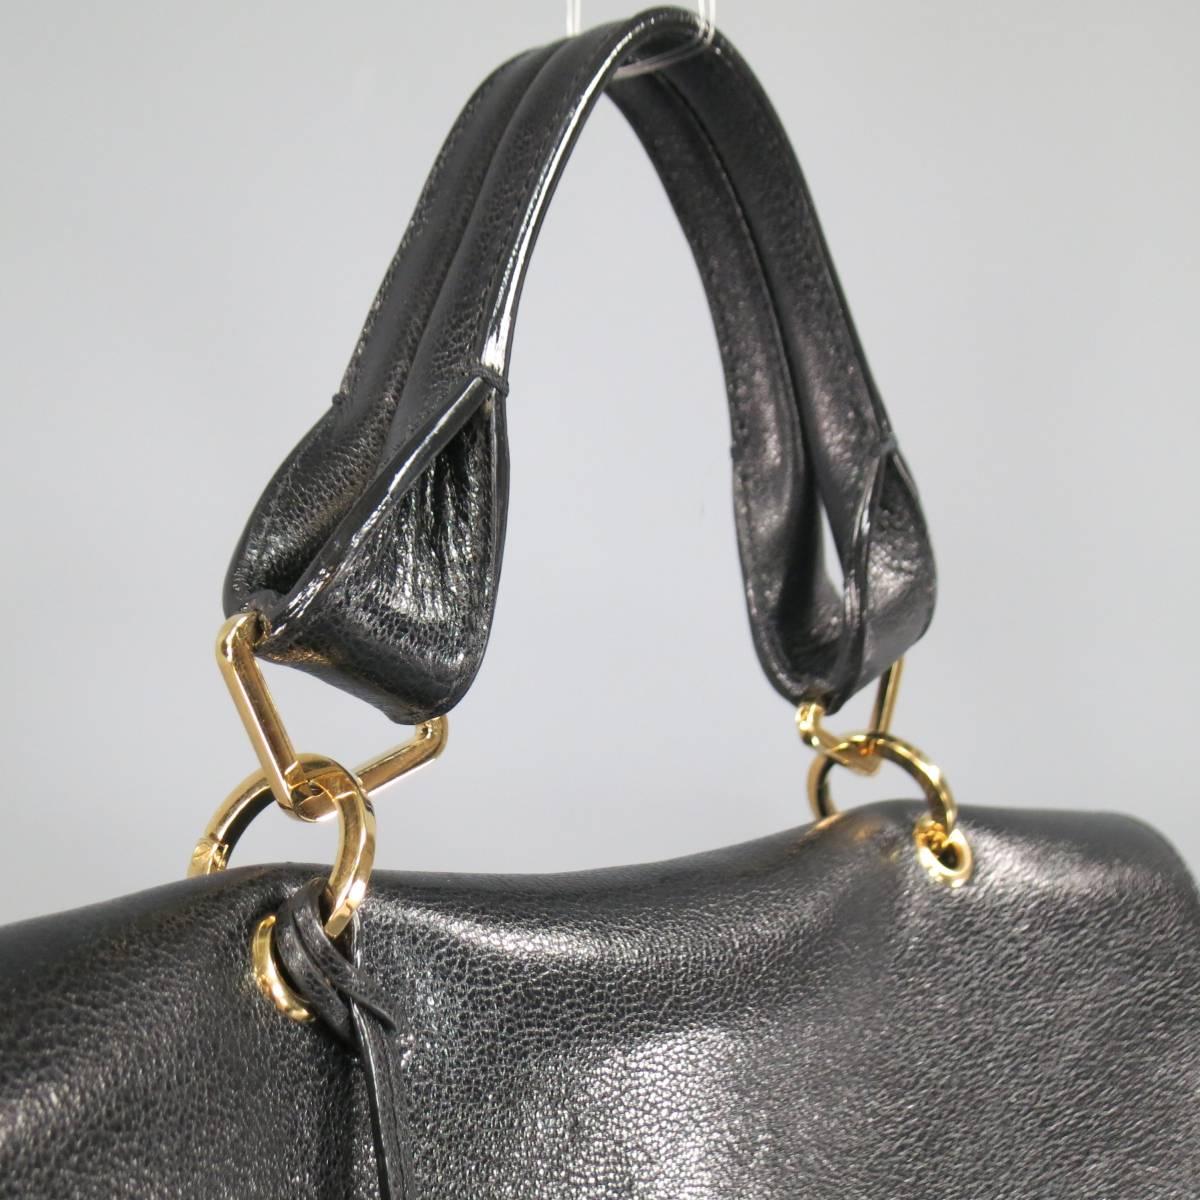 Women's New MARC JACOBS Black Leather Gold Lock Shoulder Strap Satchel Handbag